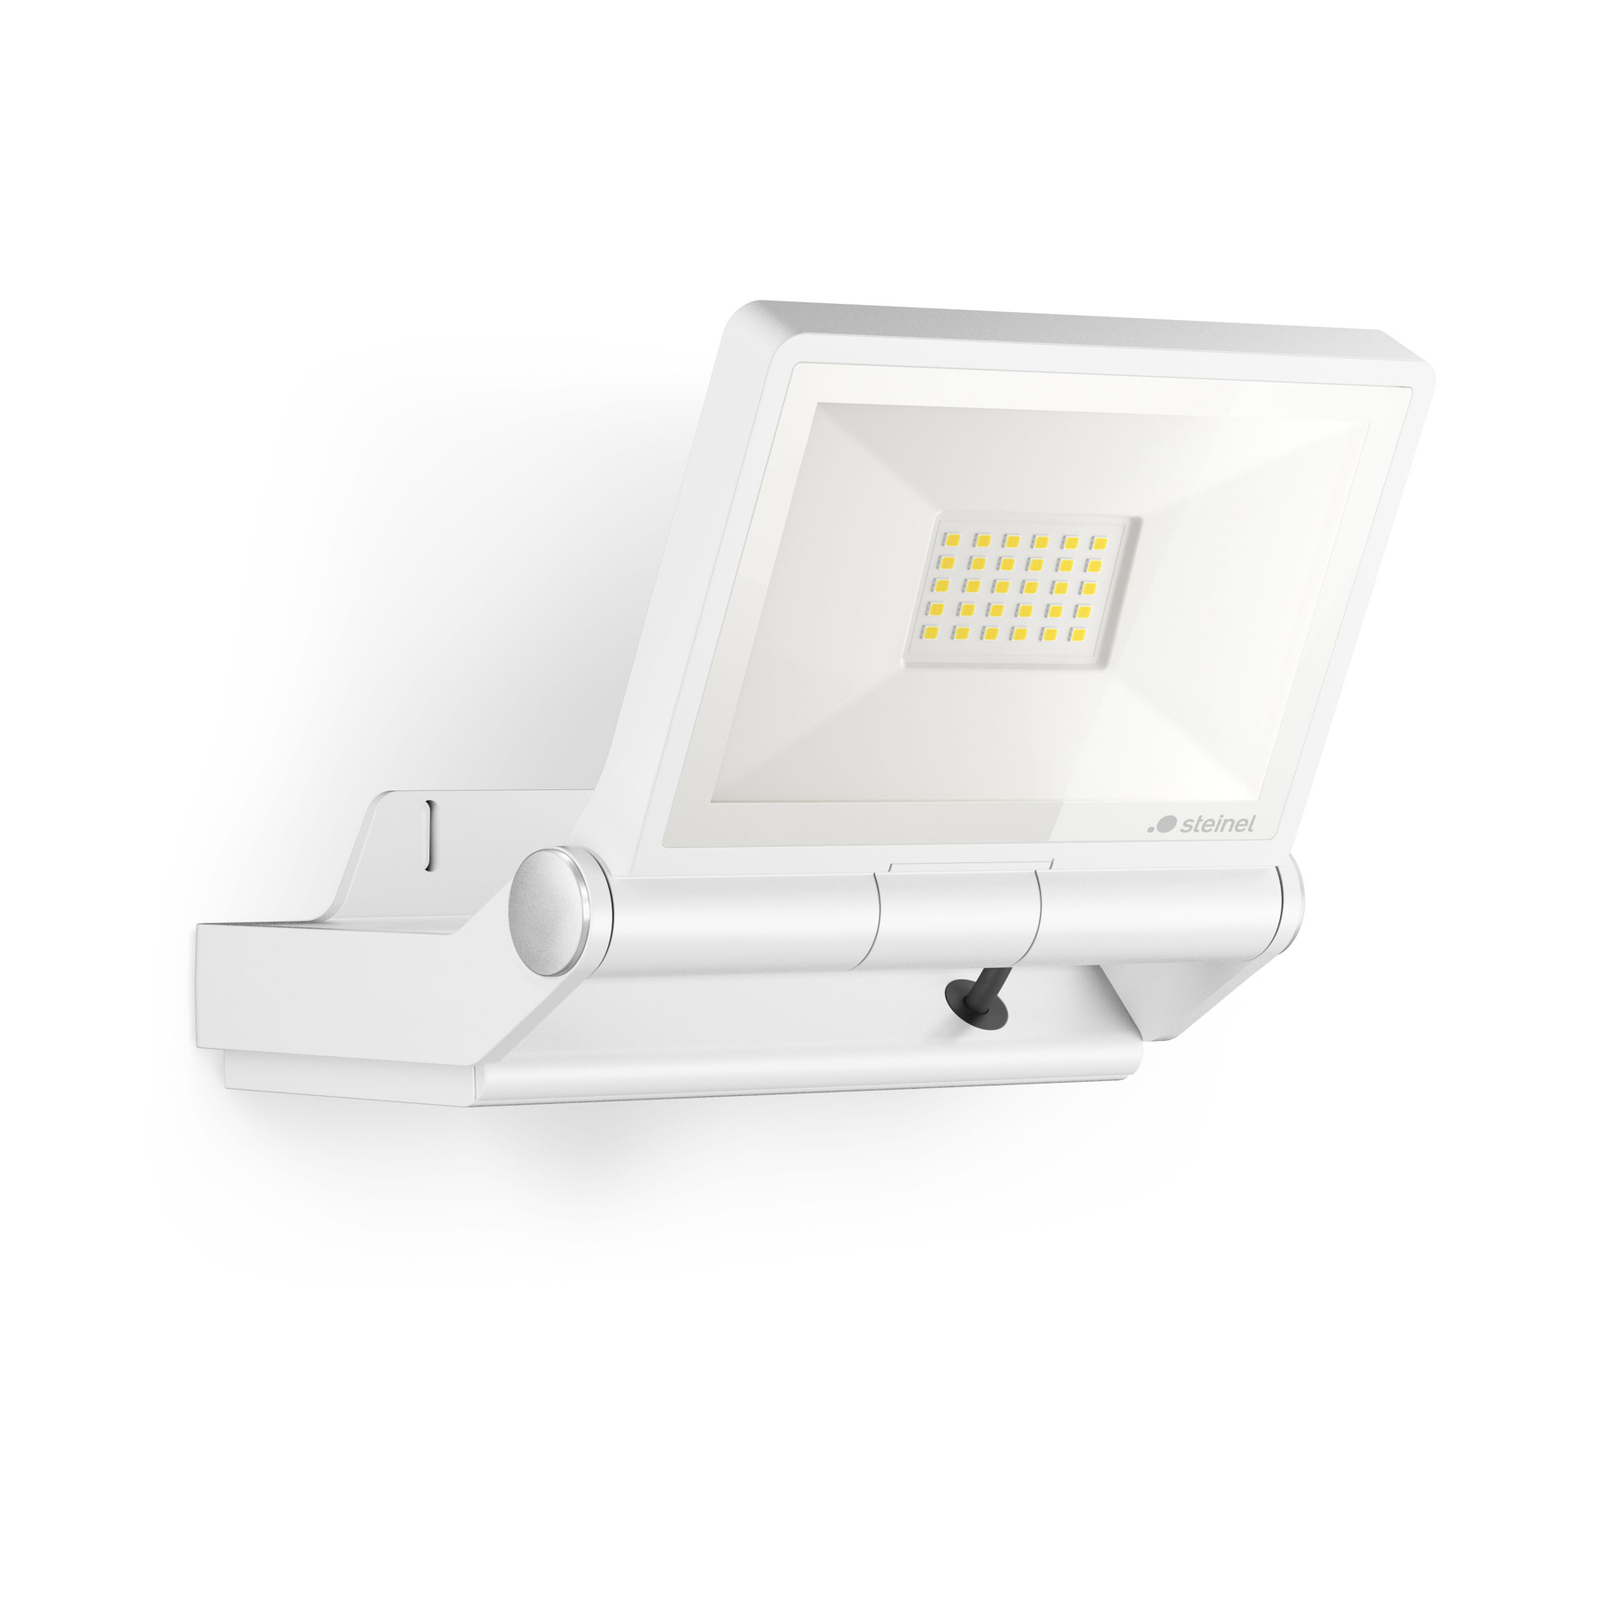 STEINEL LED spotlight XLED PRO ONE, white, without sensor